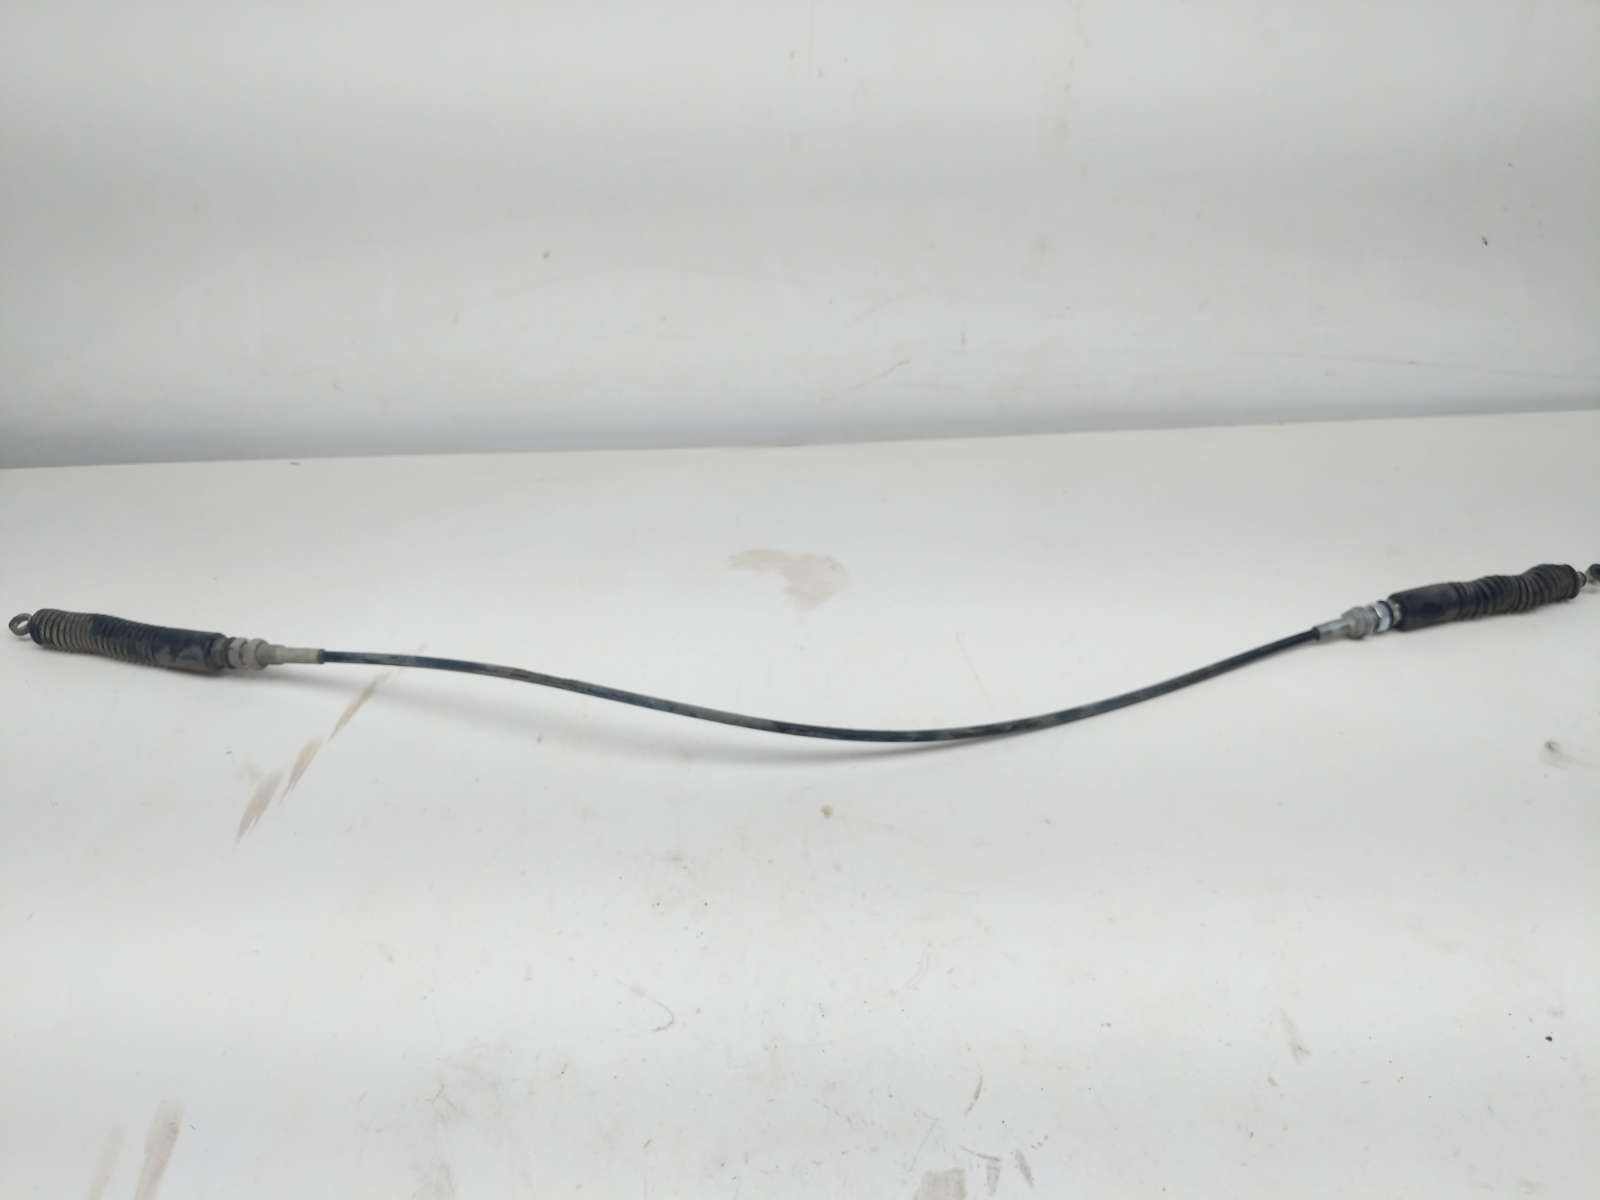 15 Polaris RZR S 900 Gear Selector Cable